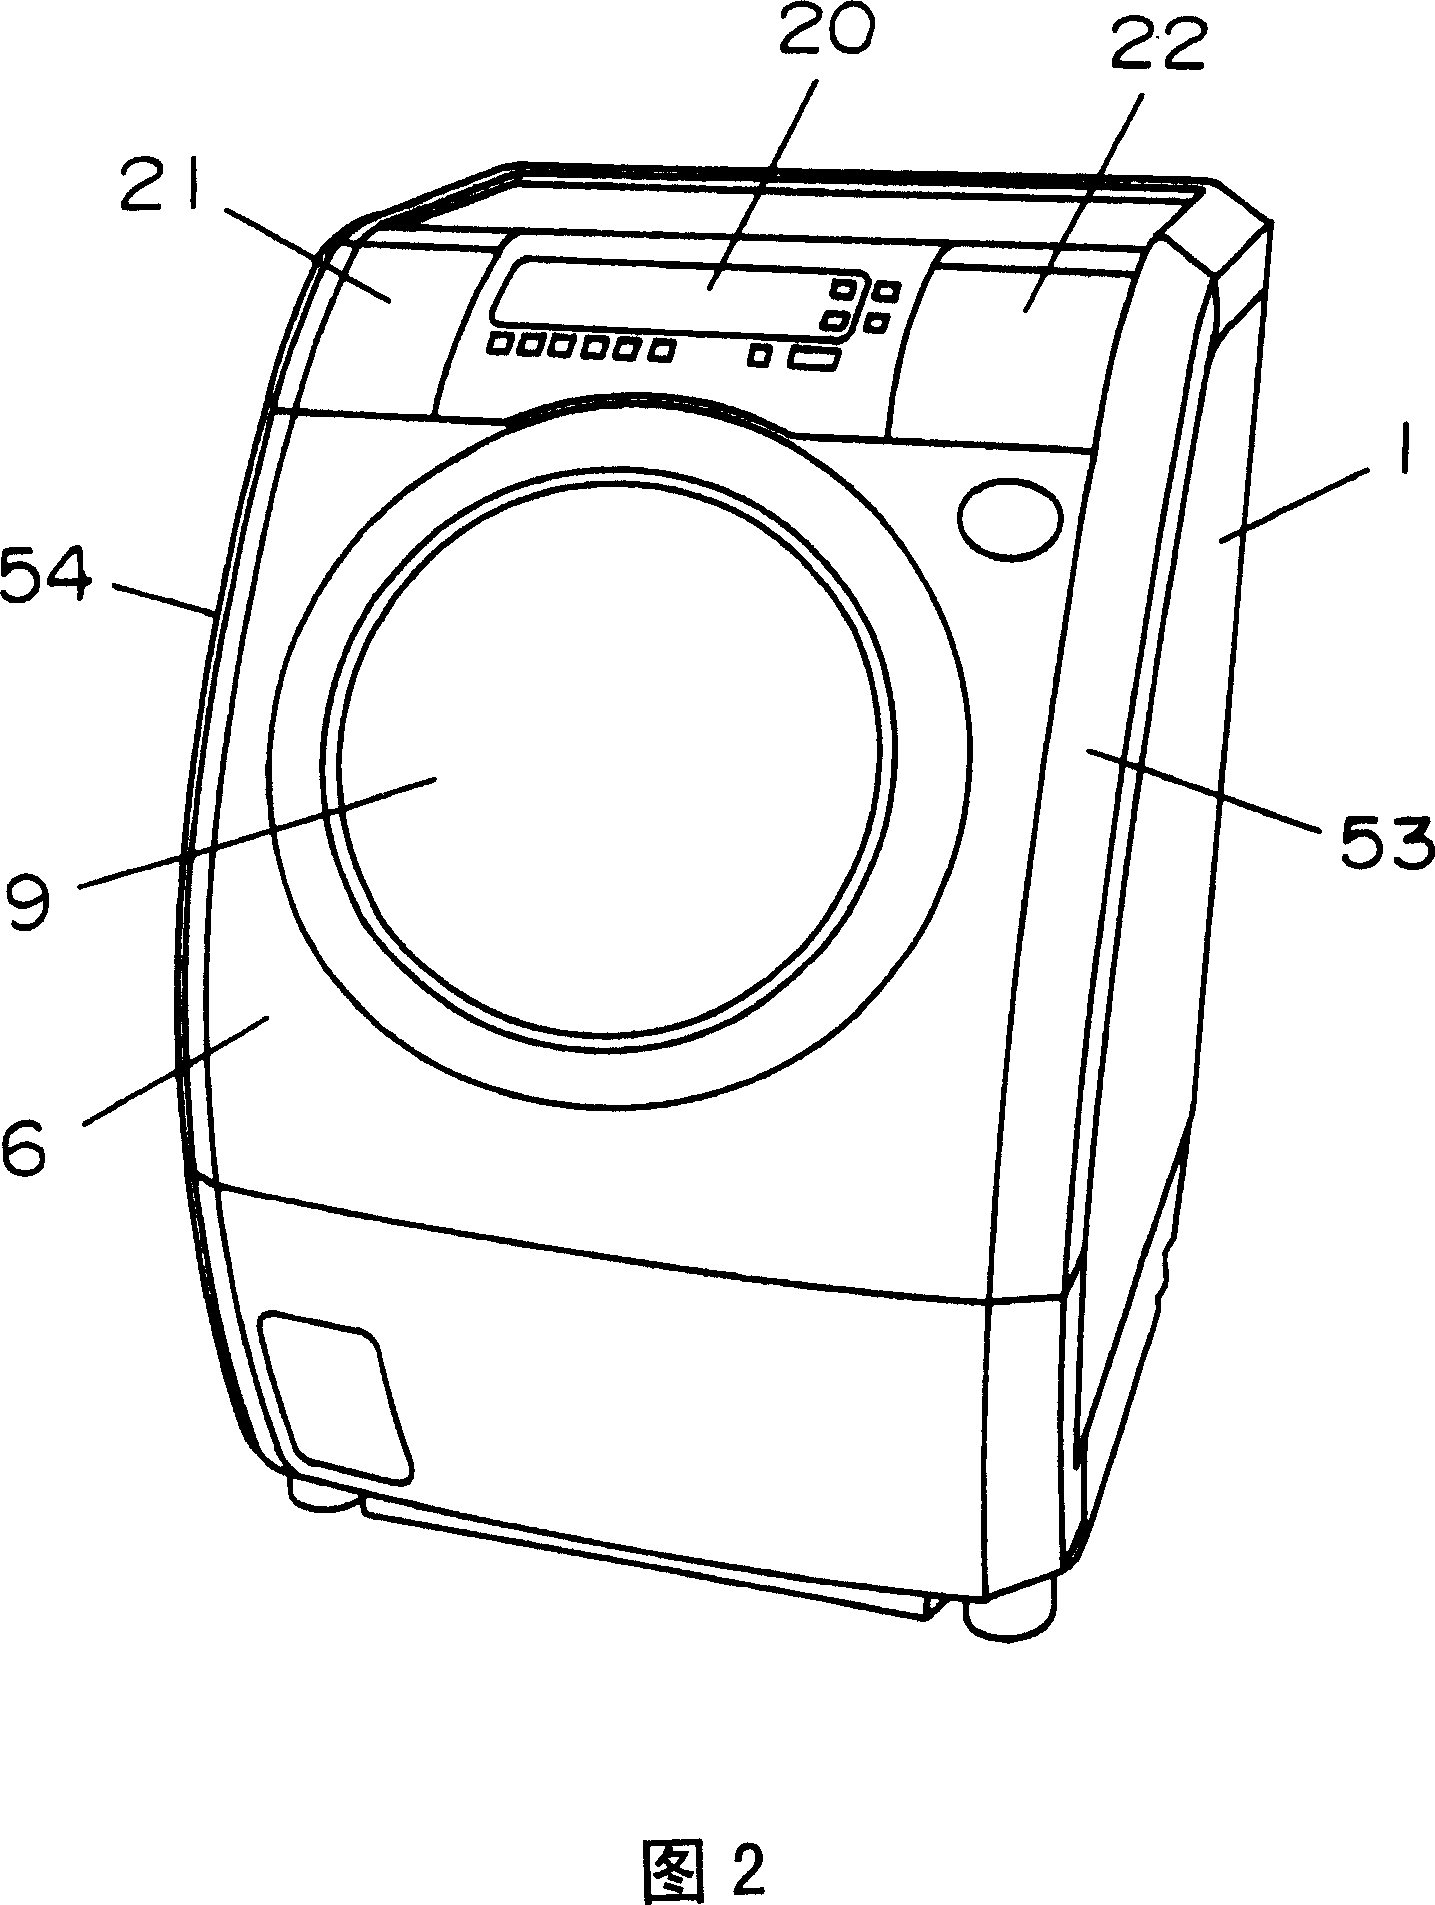 Drum type washing dryer